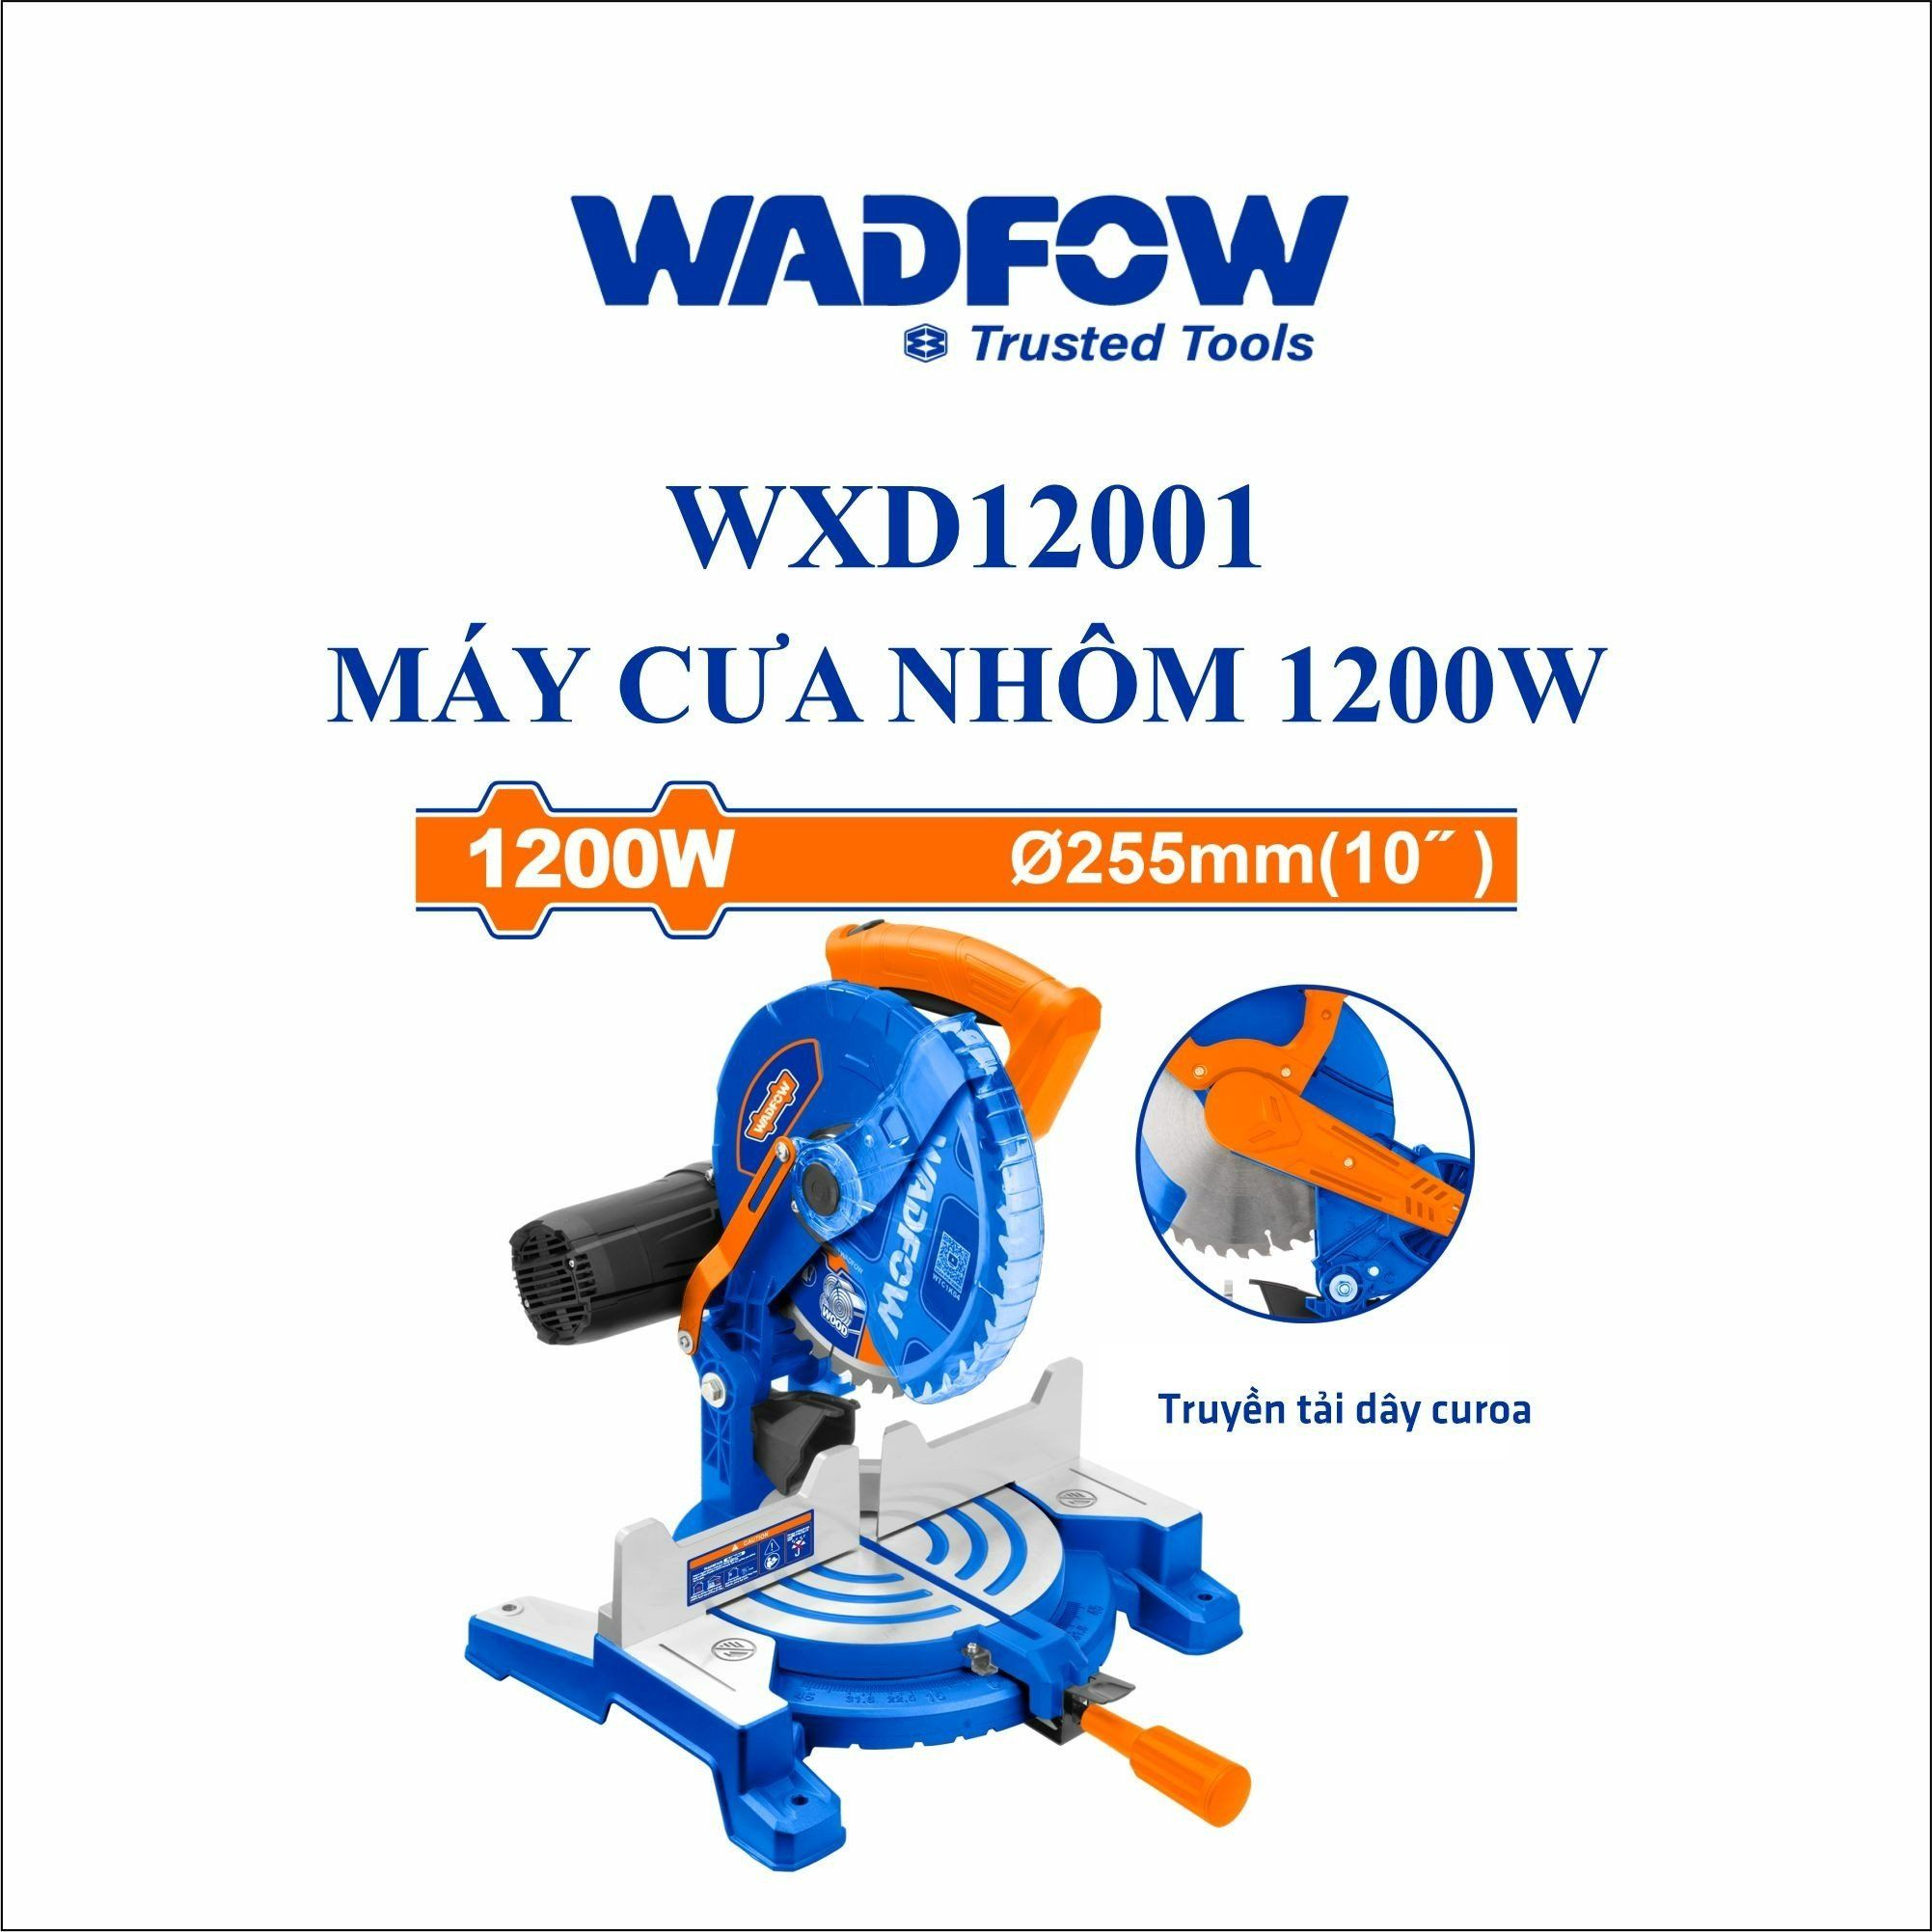  Máy cưa nhôm 1200W WADFOW WXD12001 